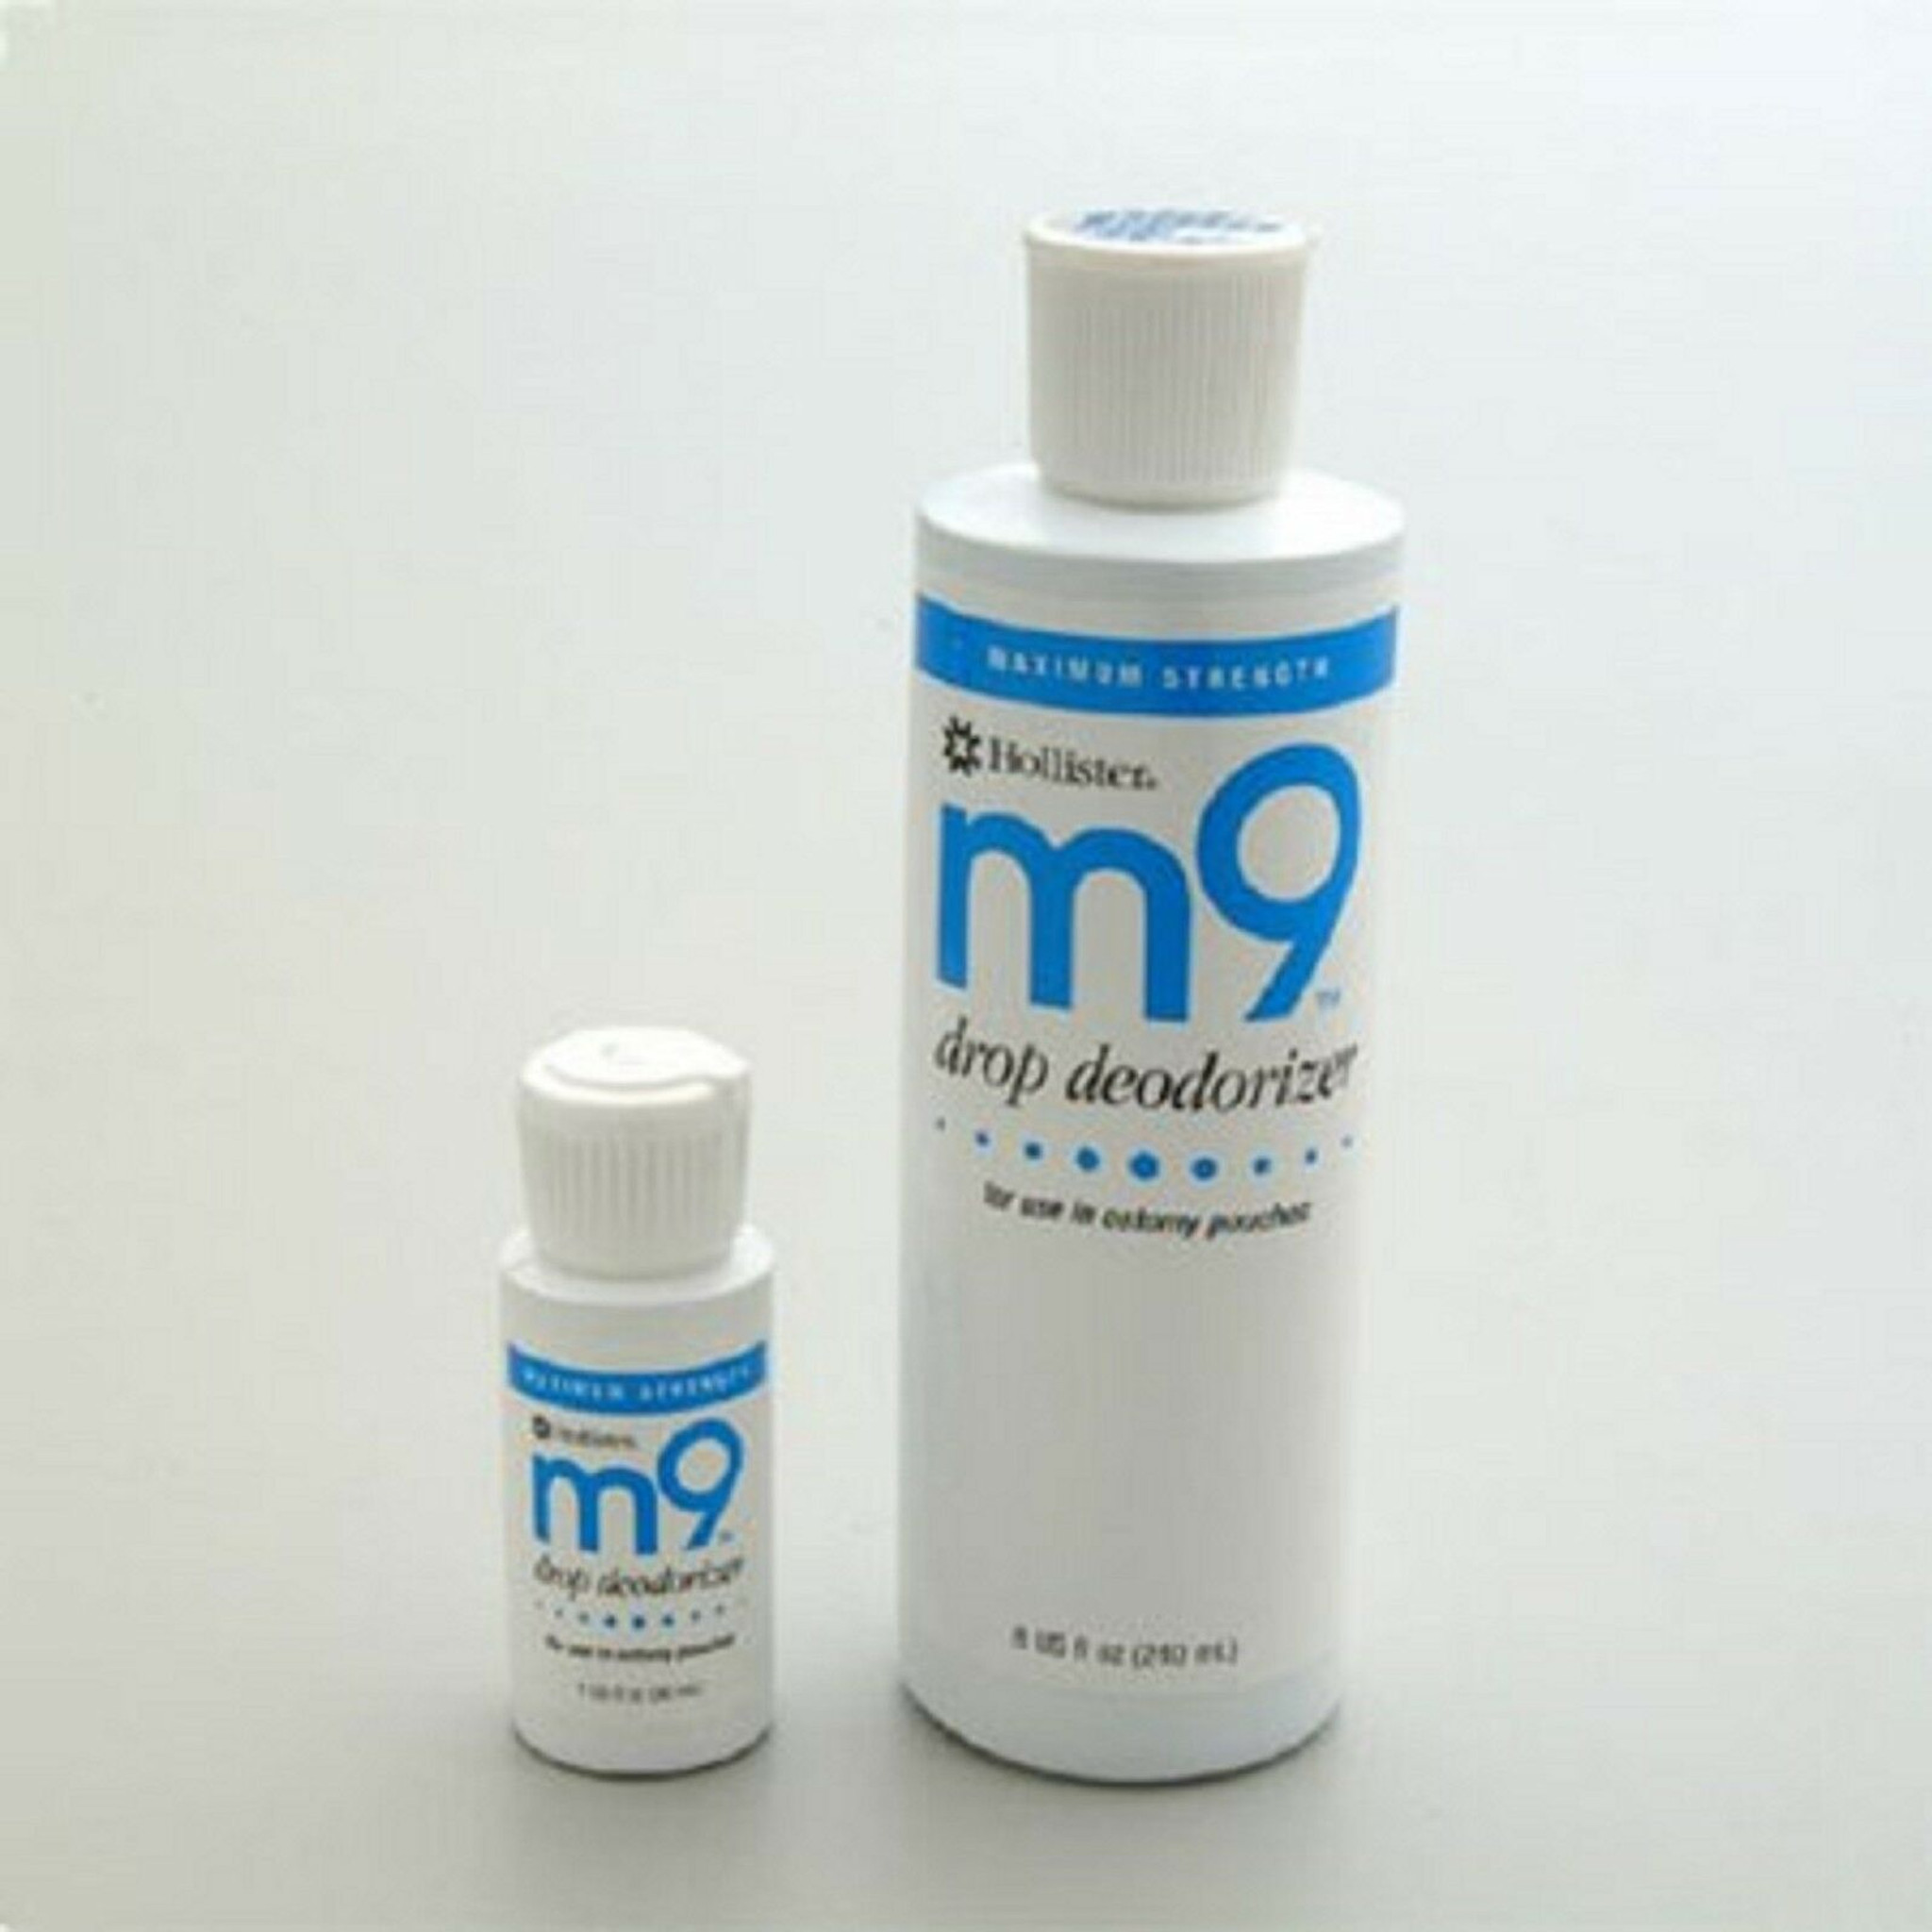 m9 odor eliminator drops 8 oz bottle